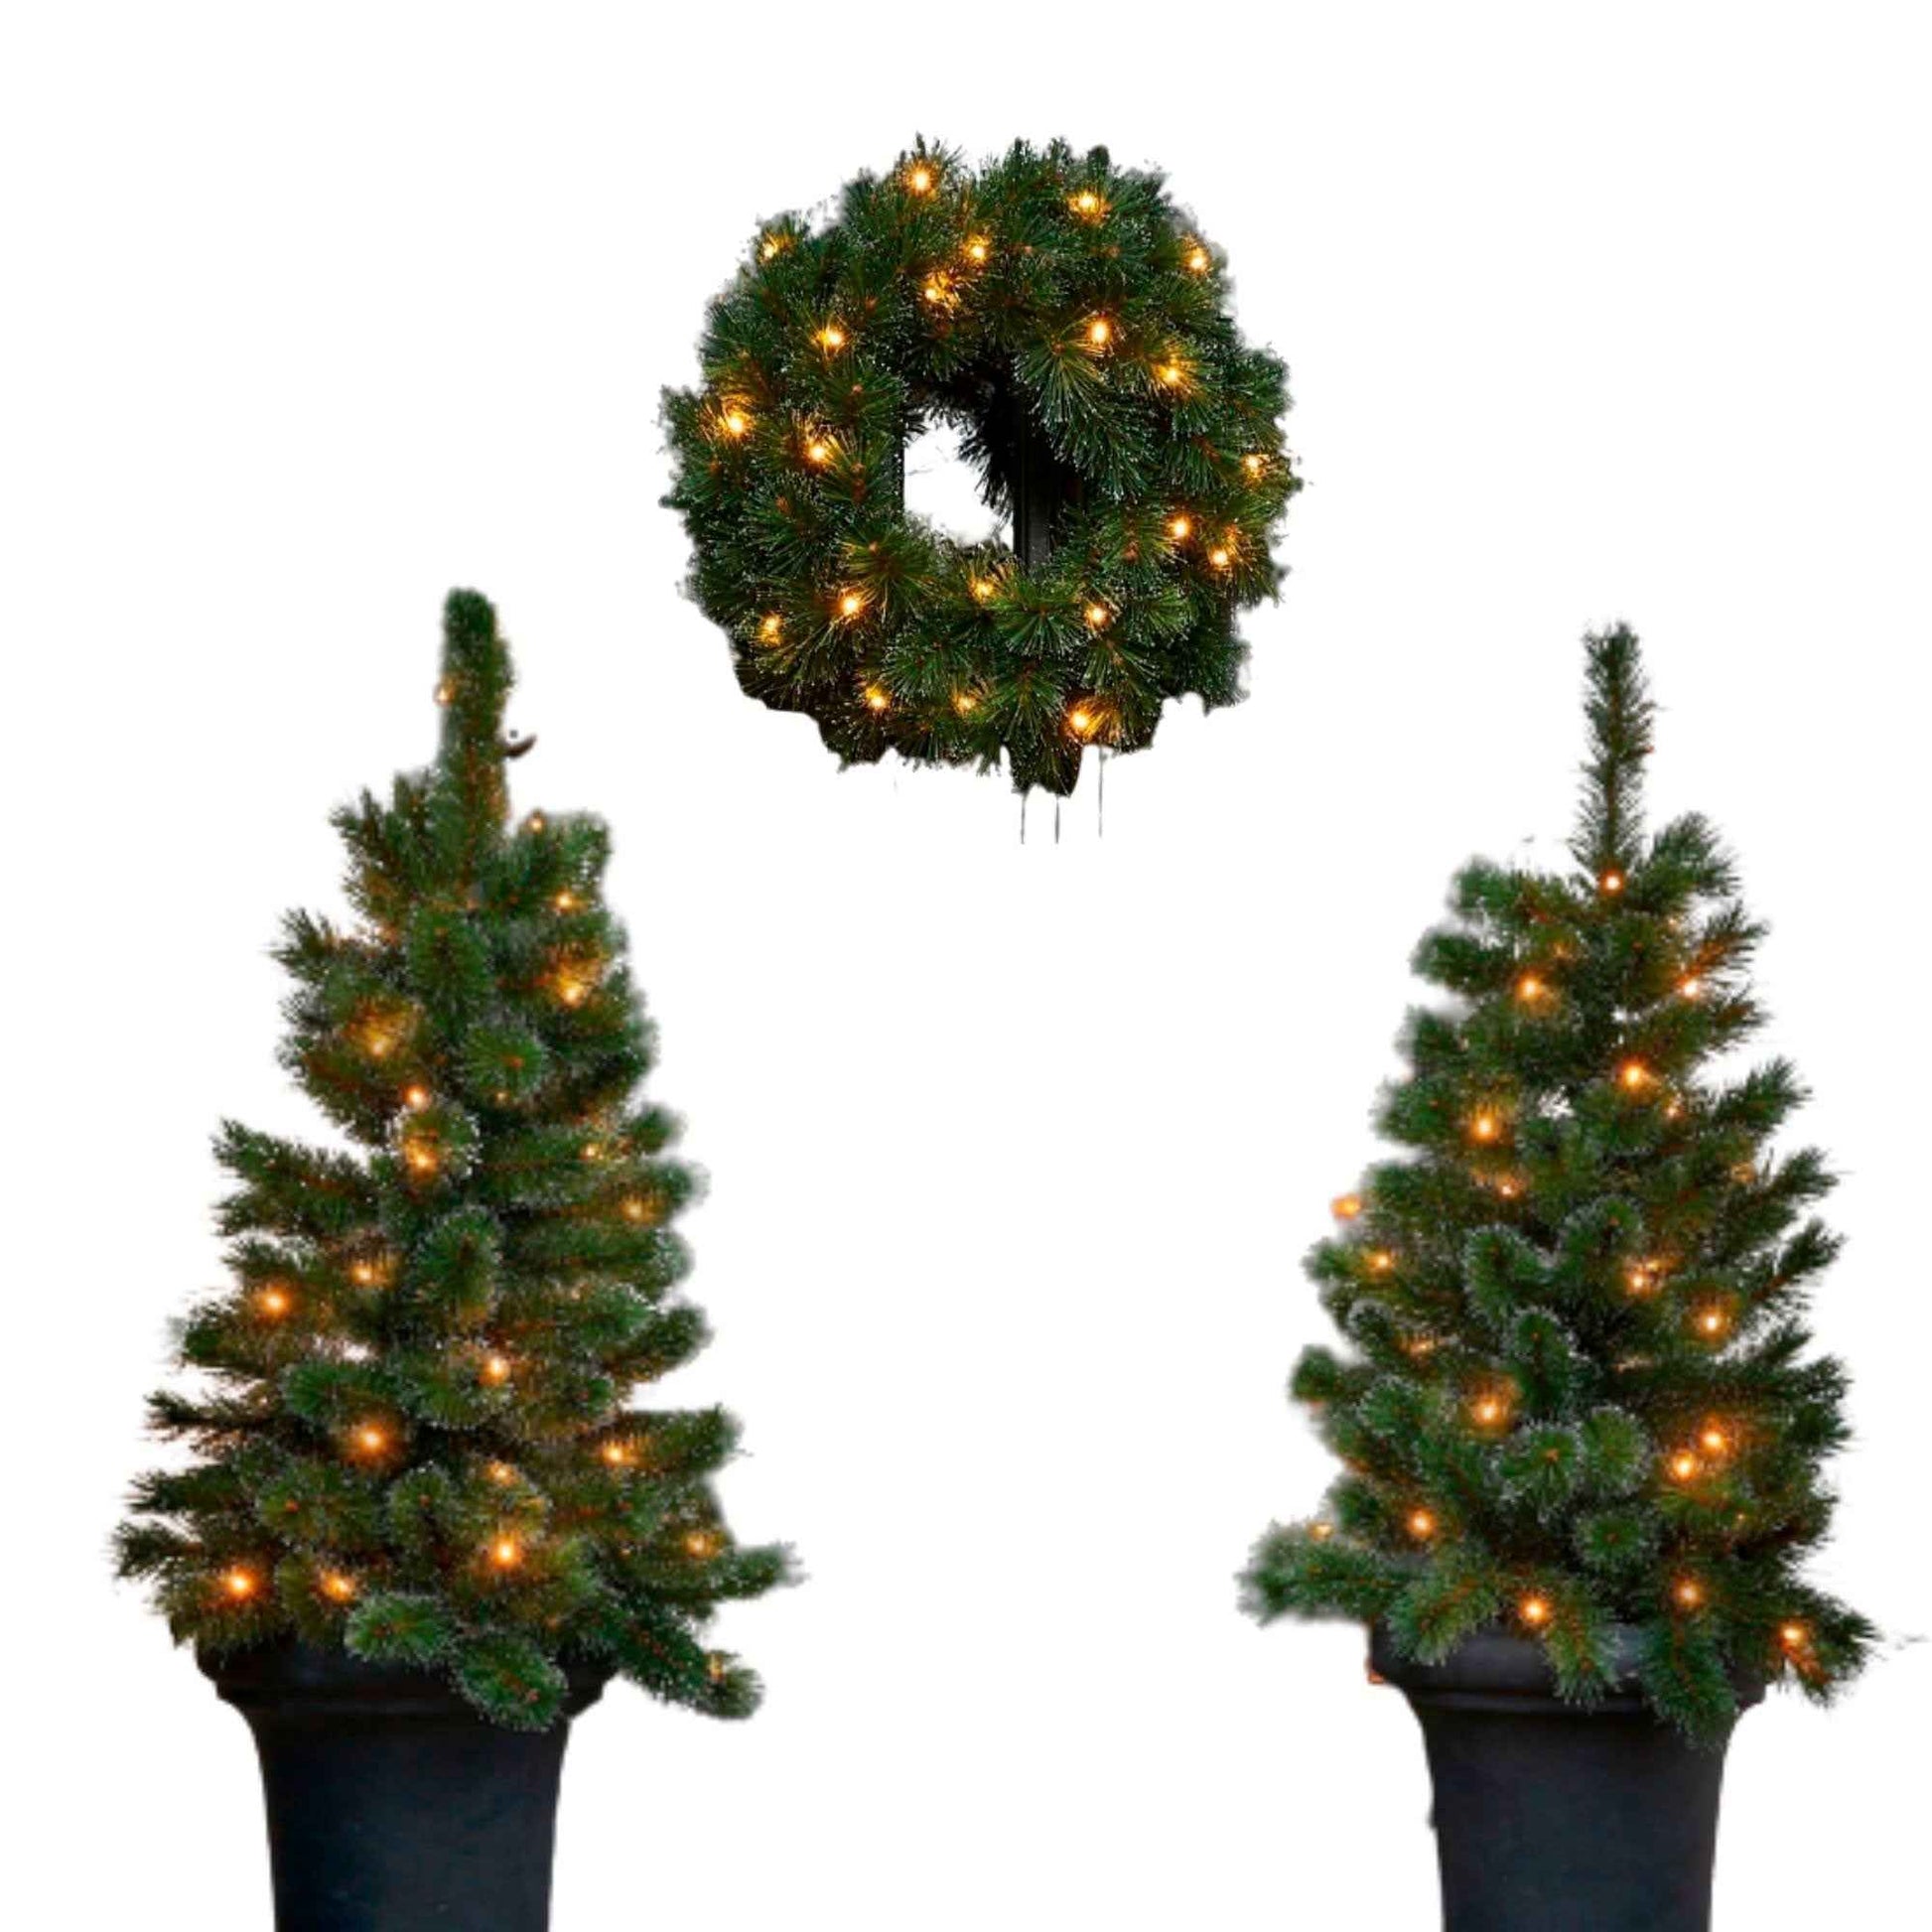 Black Box 2x Schneebedeckter künstlicher Weihnachtsbaum + 1x Adventskranz 'Glendon' inkl. LED-Beleuchtung - Weihnachtskollektion